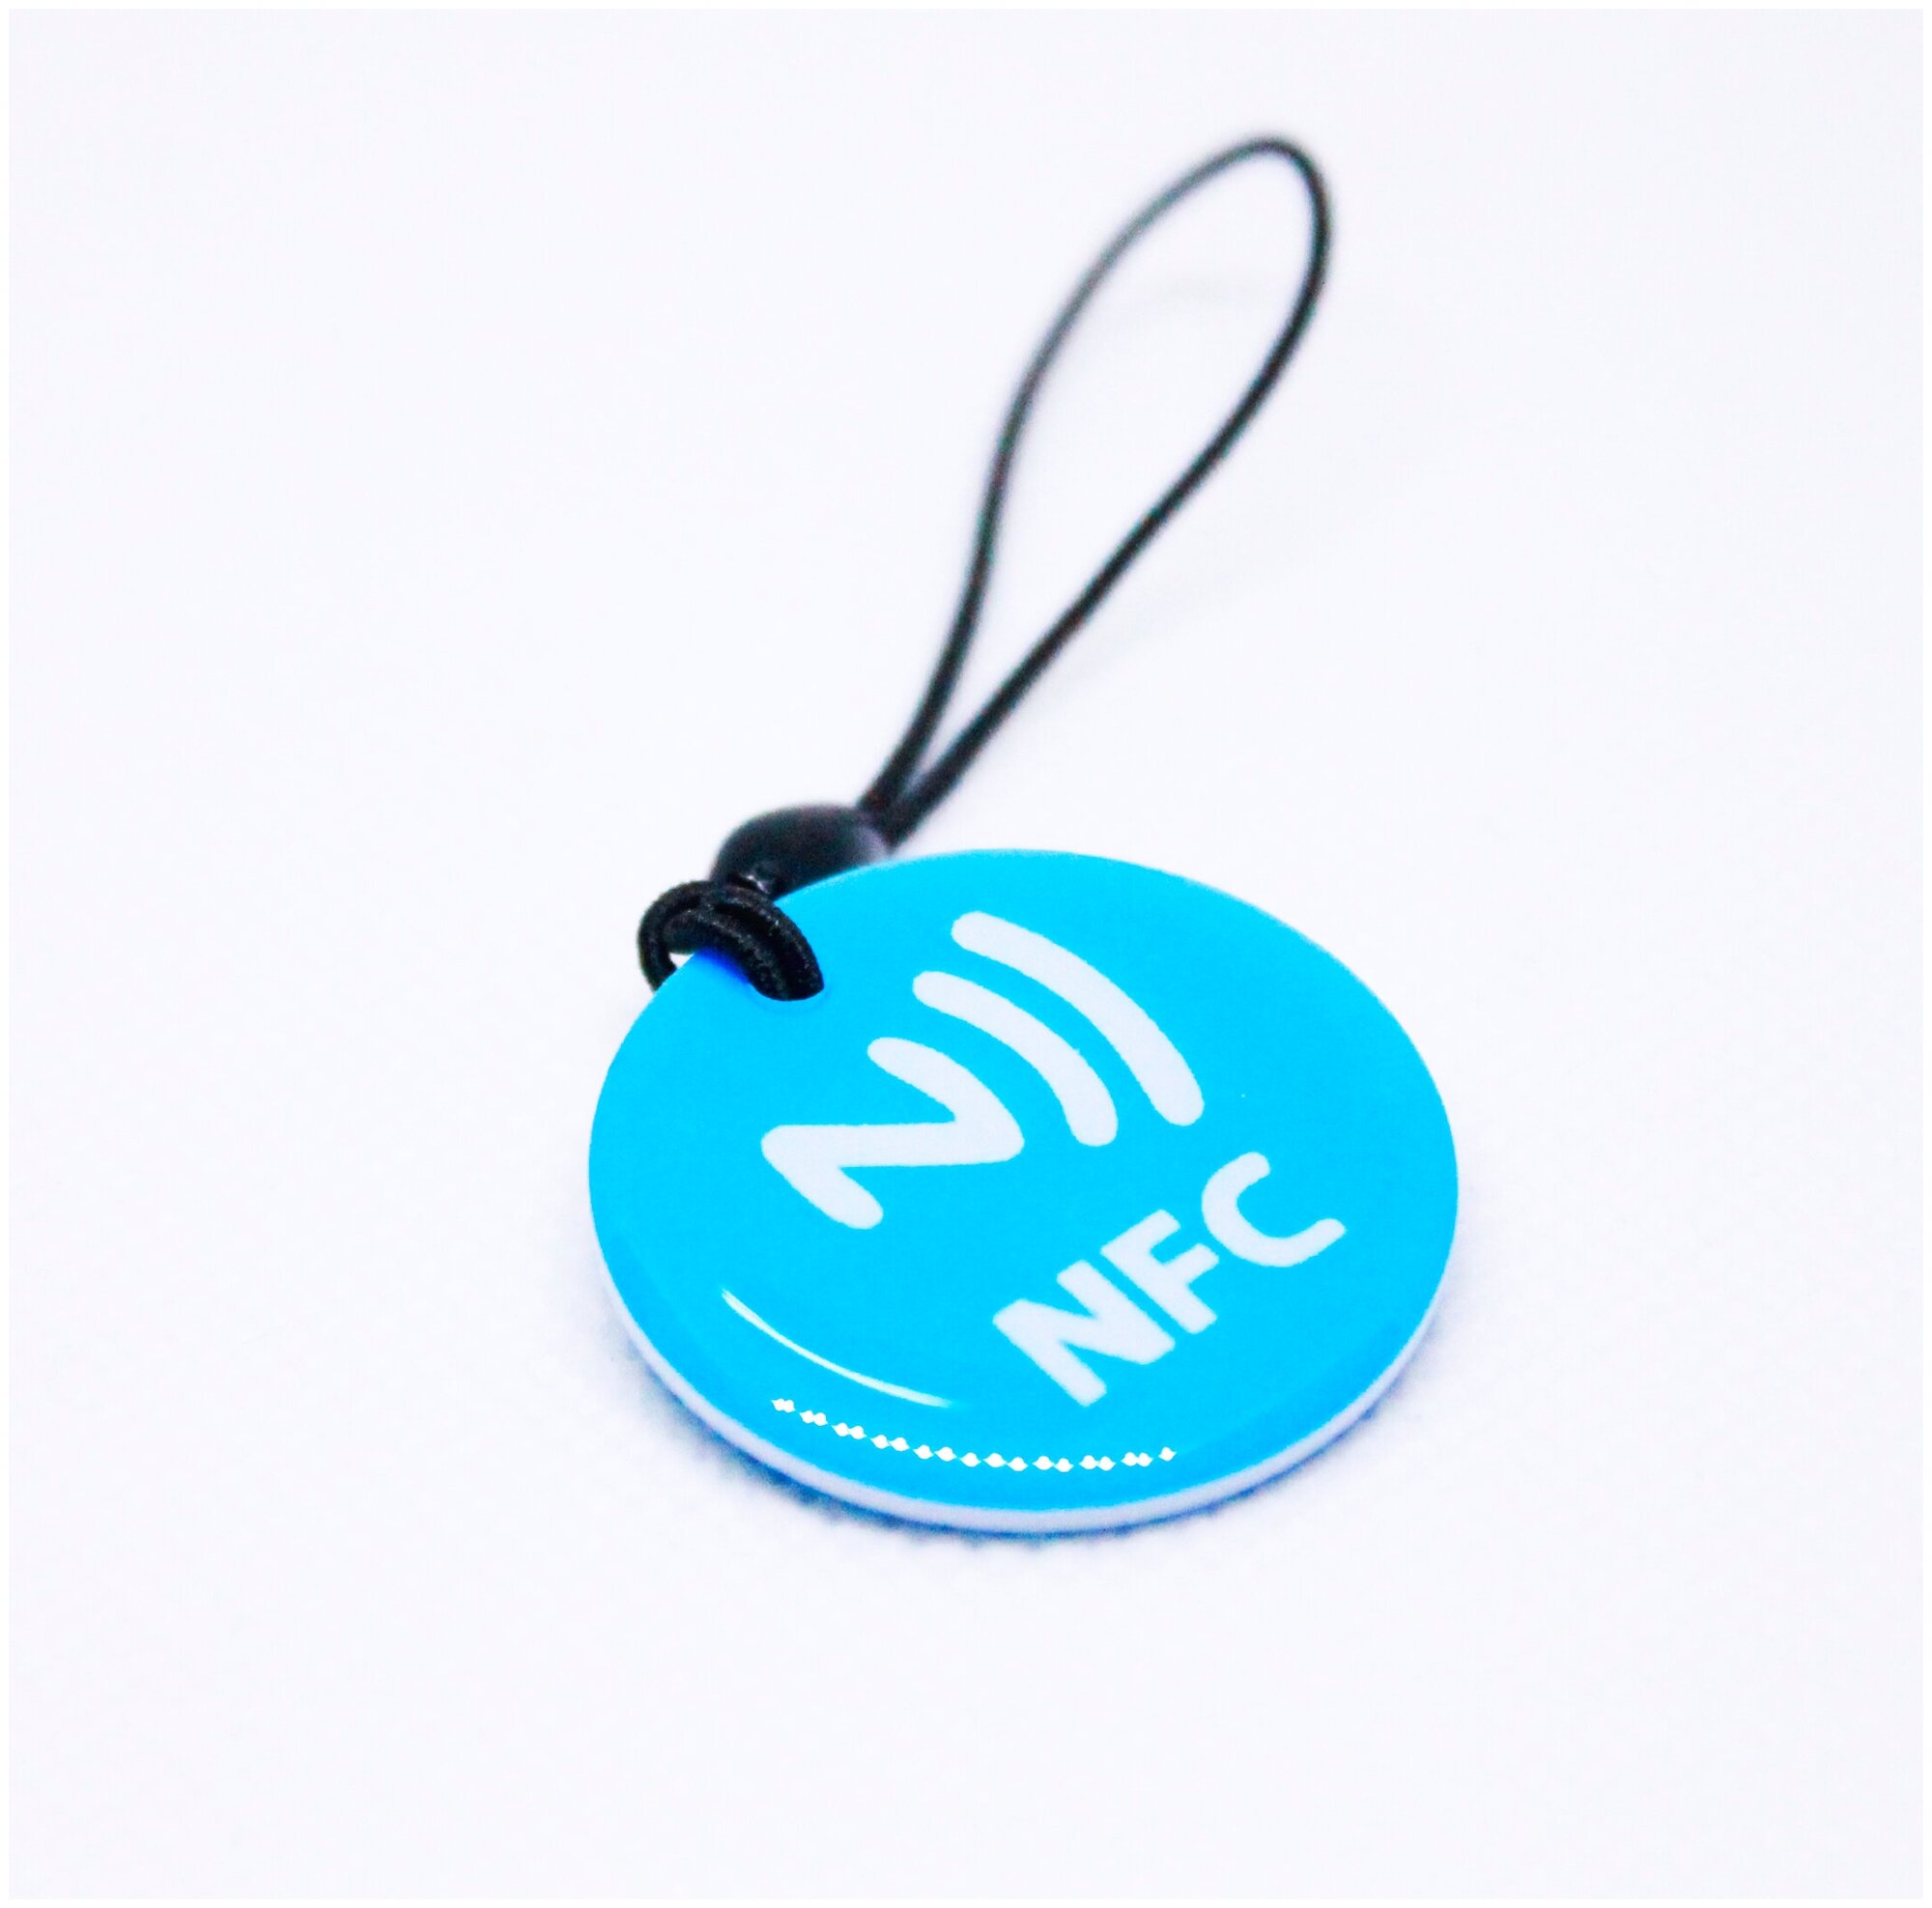 Метка NFC NTAG213 эпоксидная. Для автоматизации, умный дом, электронная визитка НФС. Цвет синий - фотография № 1